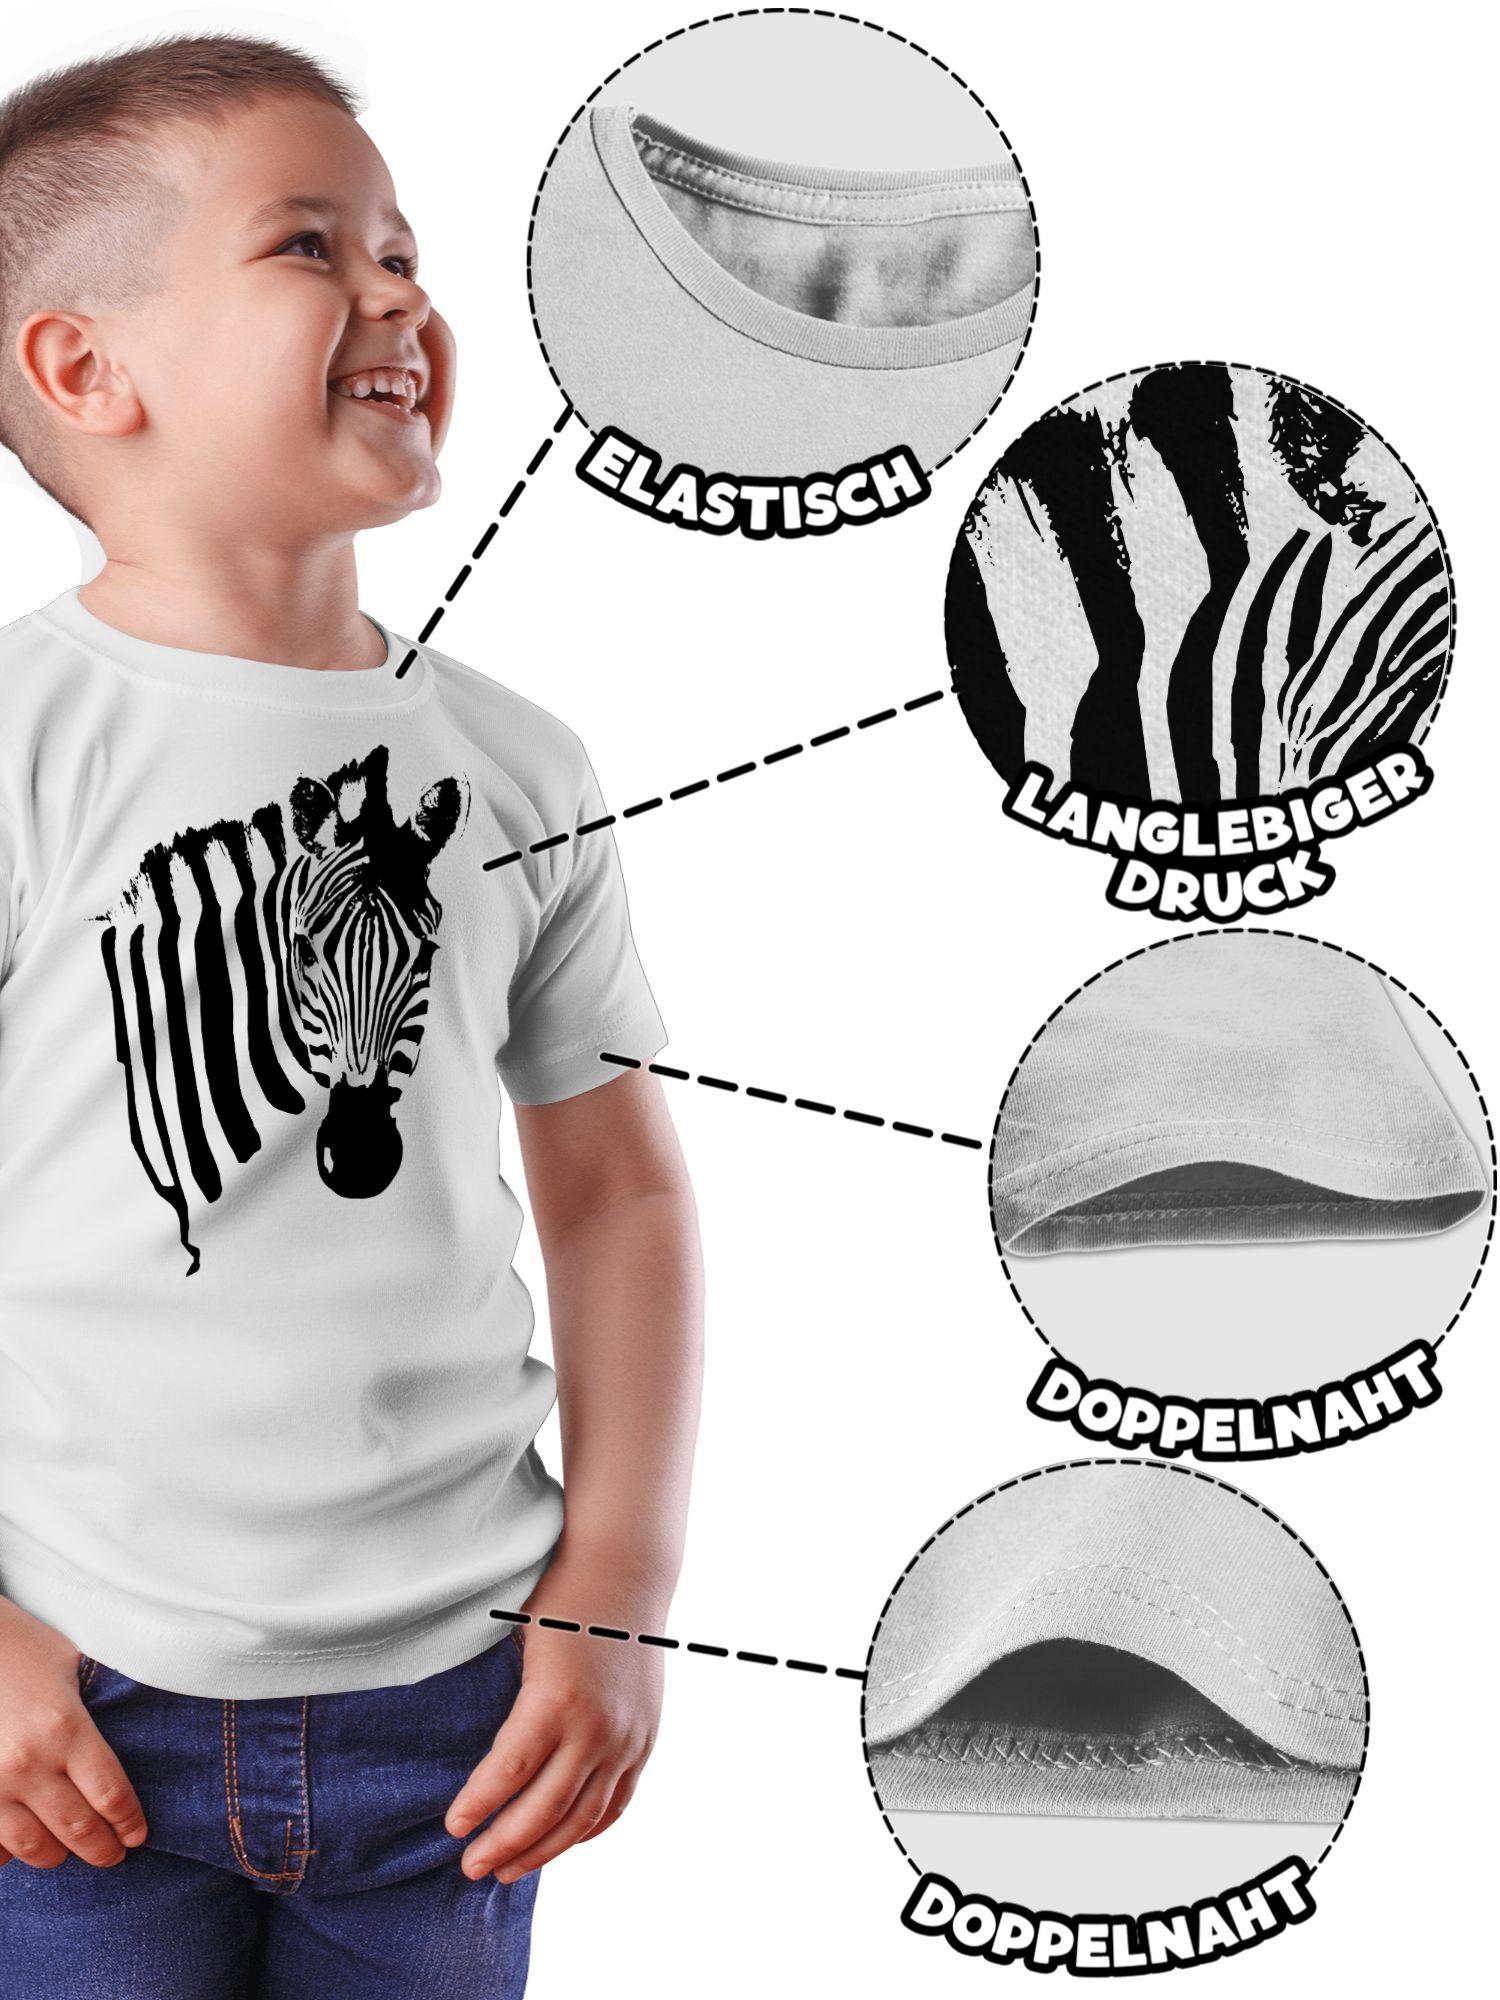 Zebramuster T-Shirt Fasching Safari 1 & Shirtracer - Weiß Afrika Zebra Tiermotiv Karneval Zebra-Kostüm Zebrastreifen